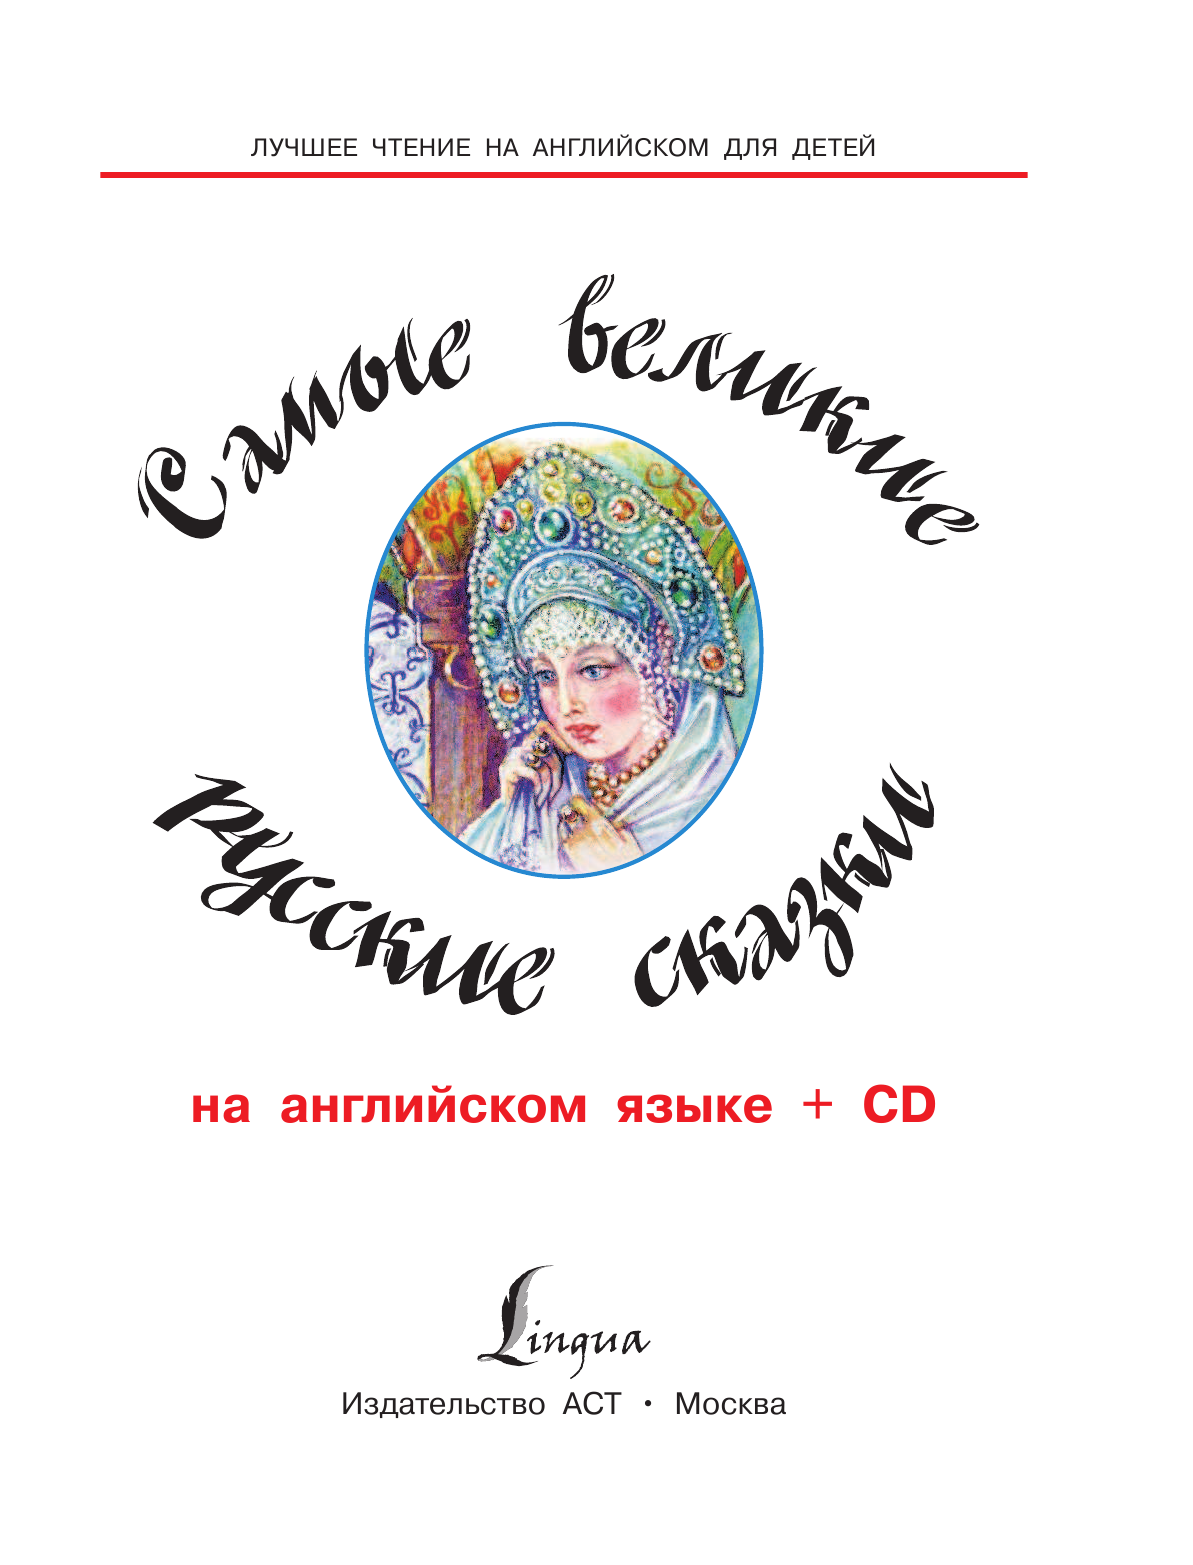  Самые великие русские сказки на английском языке + CD - страница 2